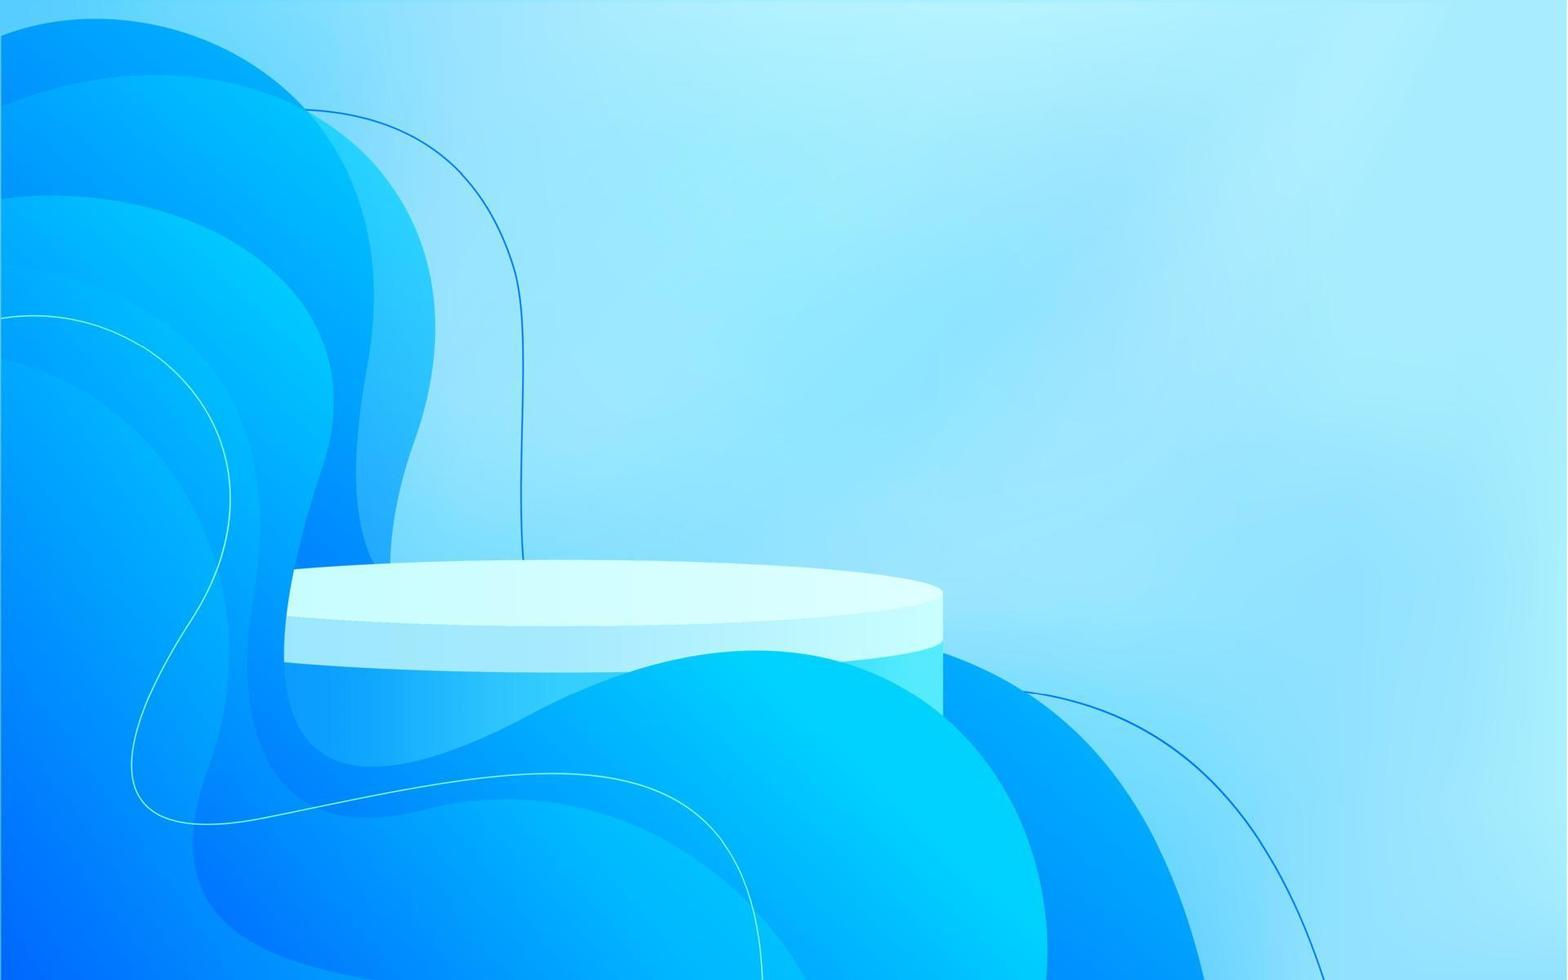 podio de soporte de cilindro 3d abstracto con decoración de onda de línea azul. fondo de escena de pared azul para presentación de productos, maqueta, escaparate. plataforma de renderizado vectorial vector